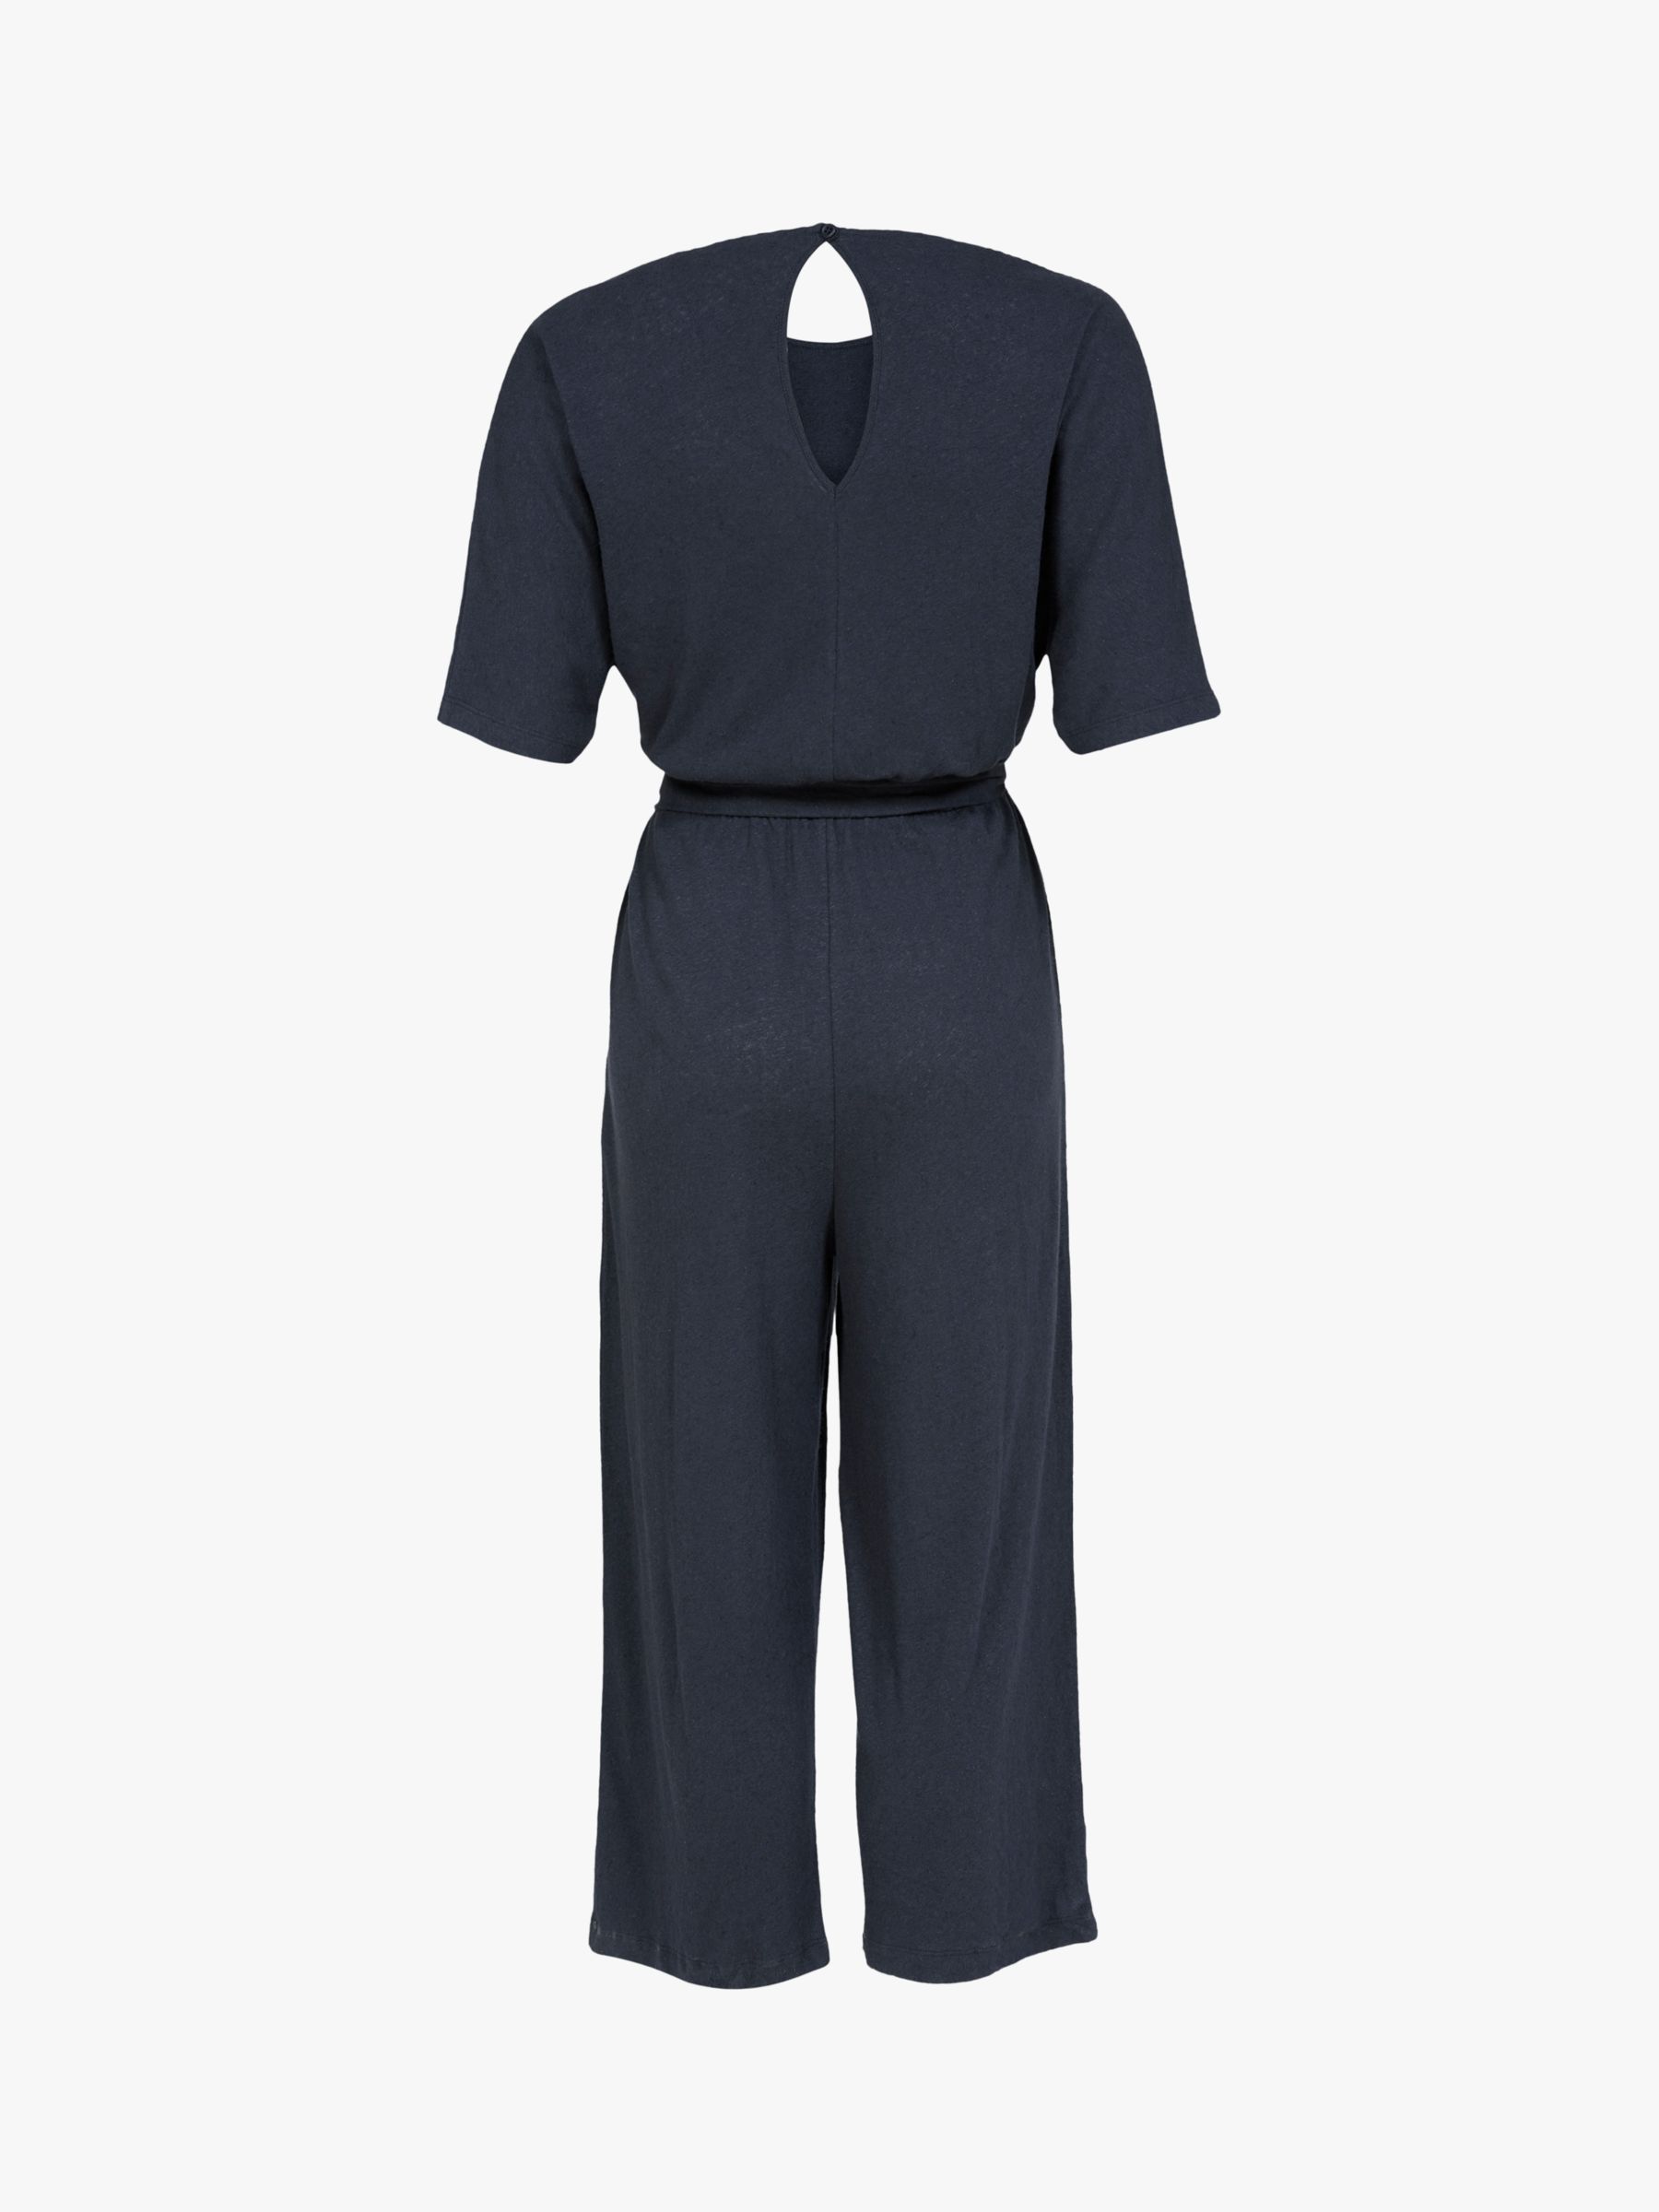 Celtic & Co. Linen/Cotton Short Sleeve Jumpsuit, Navy, 8